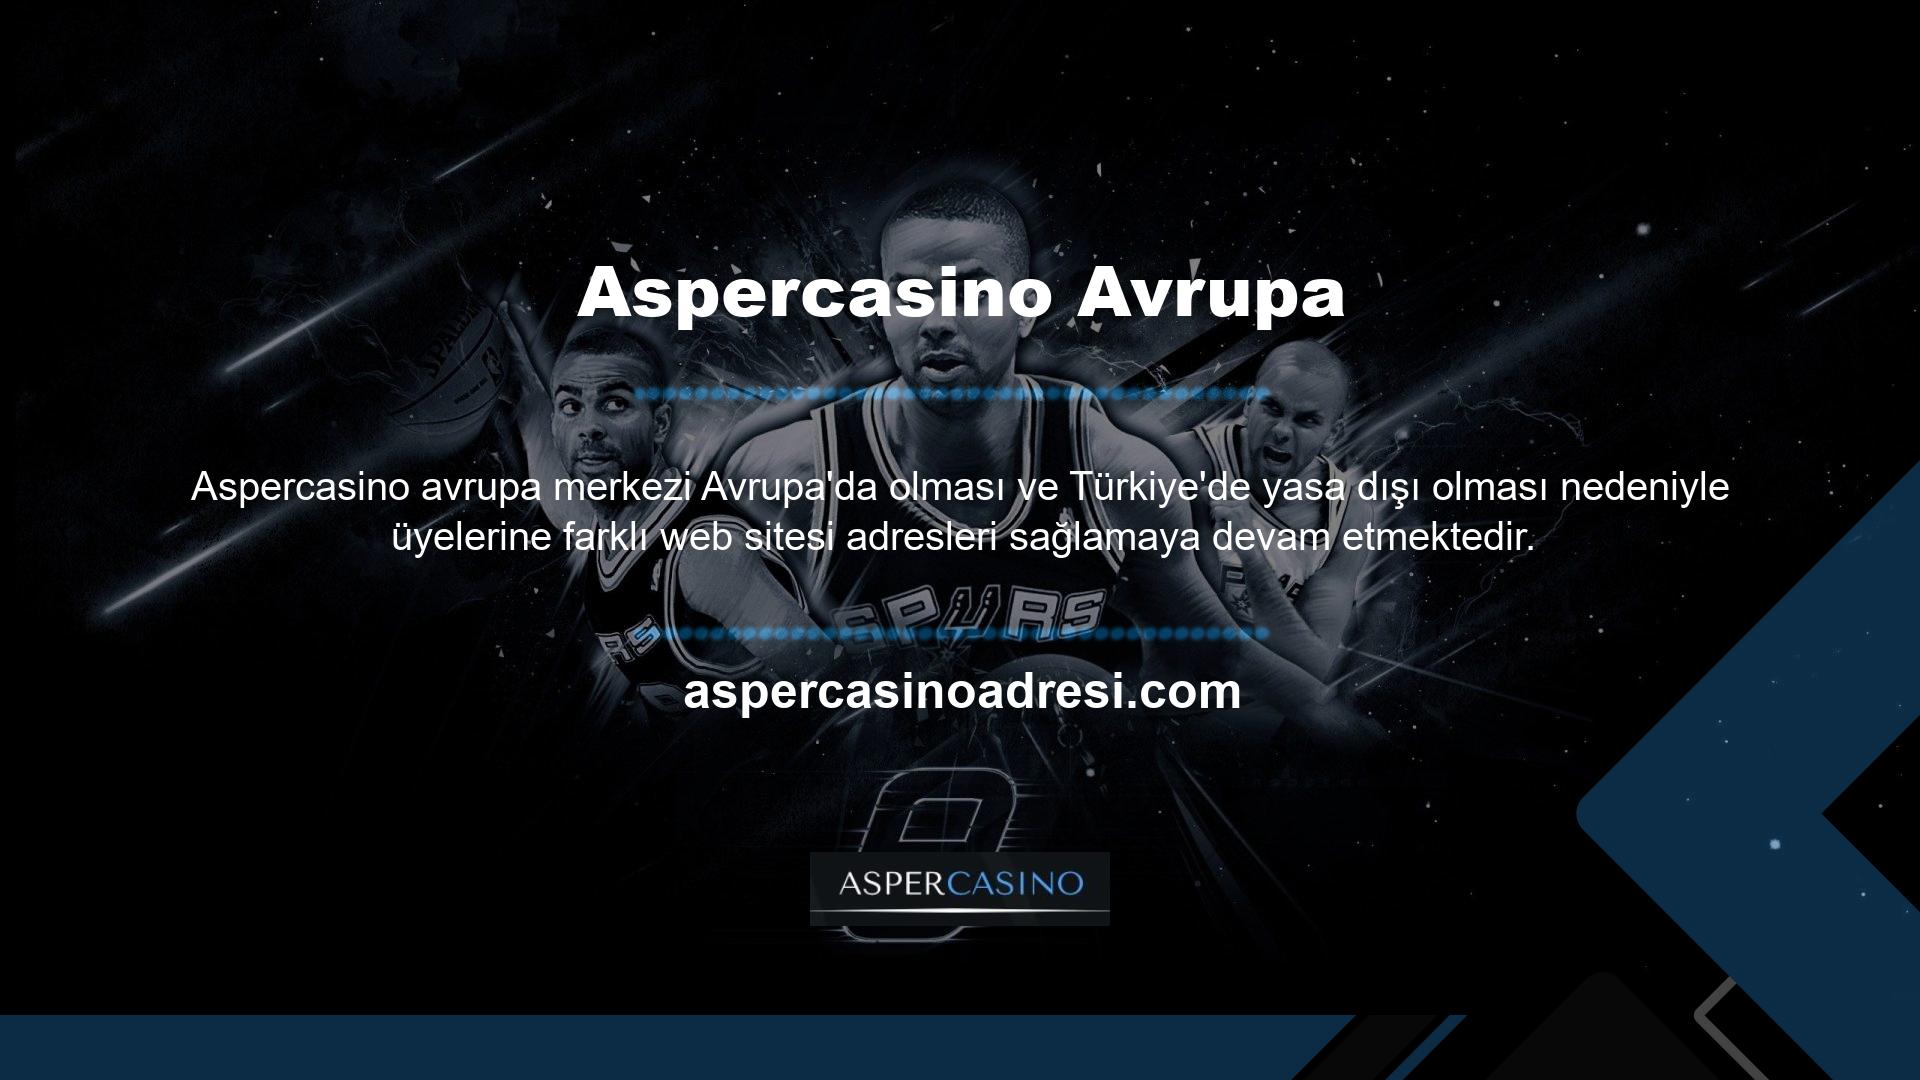 Aspercasino ekibi, erişimi yasaklayan mahkeme kararının ardından Aspercasino hızlı para yatırma işlemlerinin kesintisiz devam edebilmesi için adresini güncelliyor